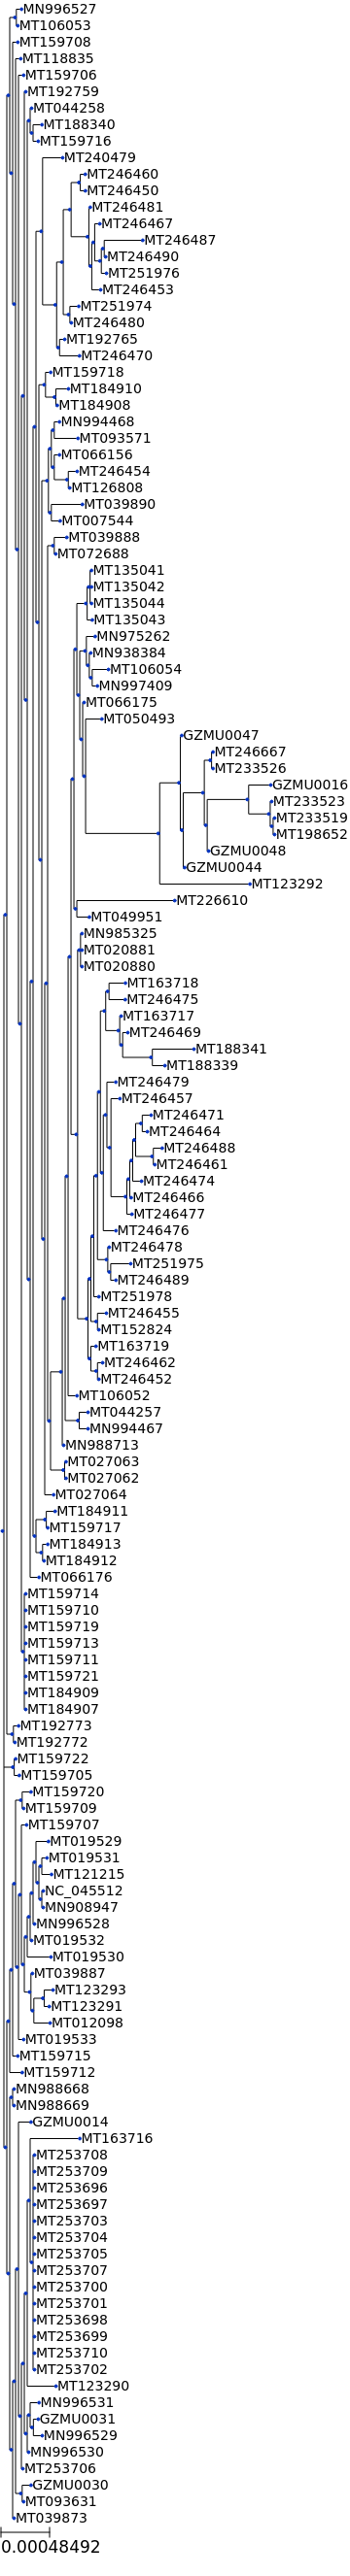 ../_images/examples_coronavirus_analysis_Tree_building_for_153_Coronavirus_genomes_8_0.png